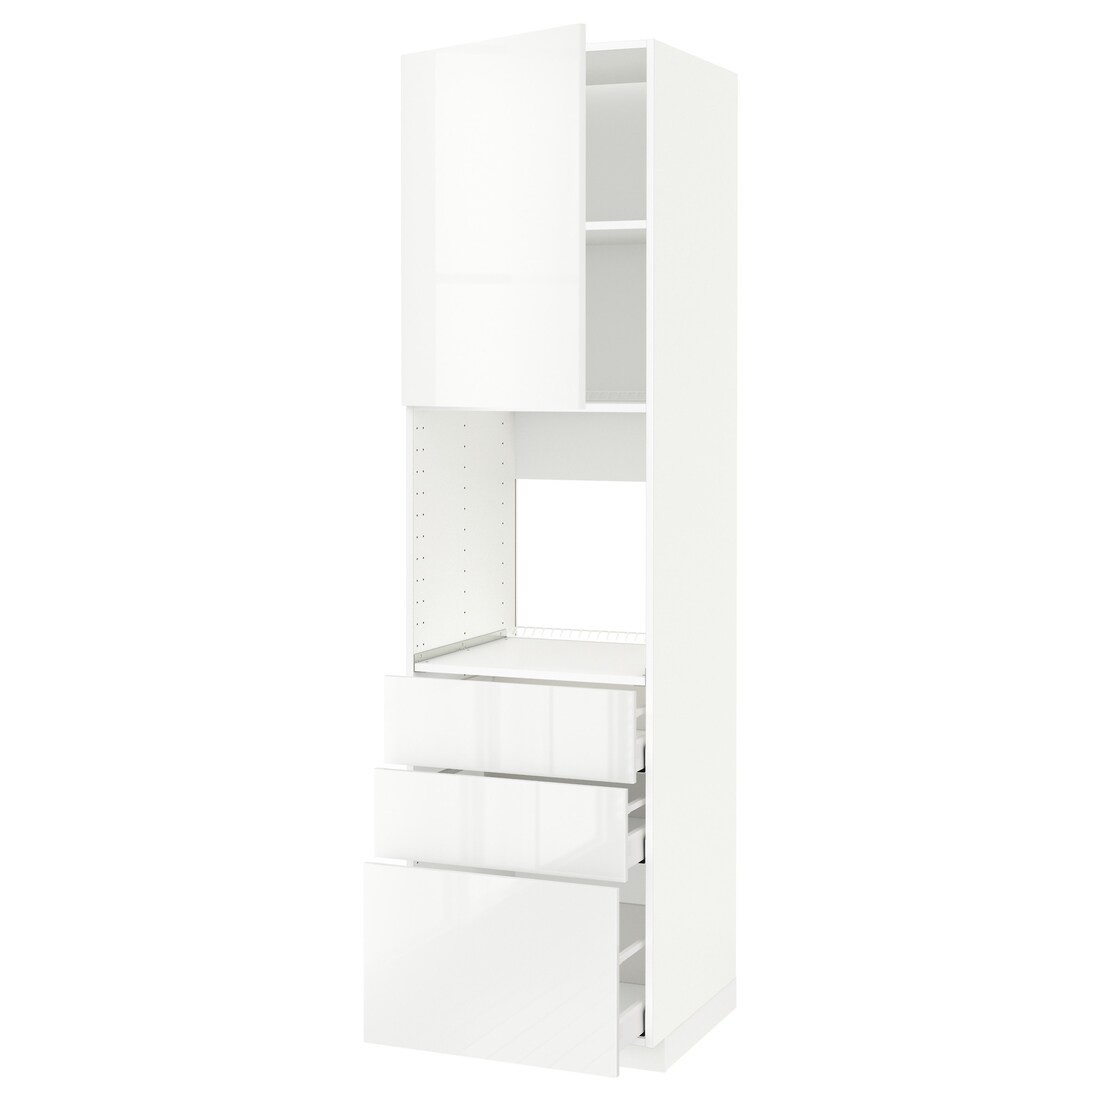 METOD МЕТОД / MAXIMERA МАКСИМЕРА Высокий шкаф для духовки, белый / Ringhult белый, 60x60x220 см